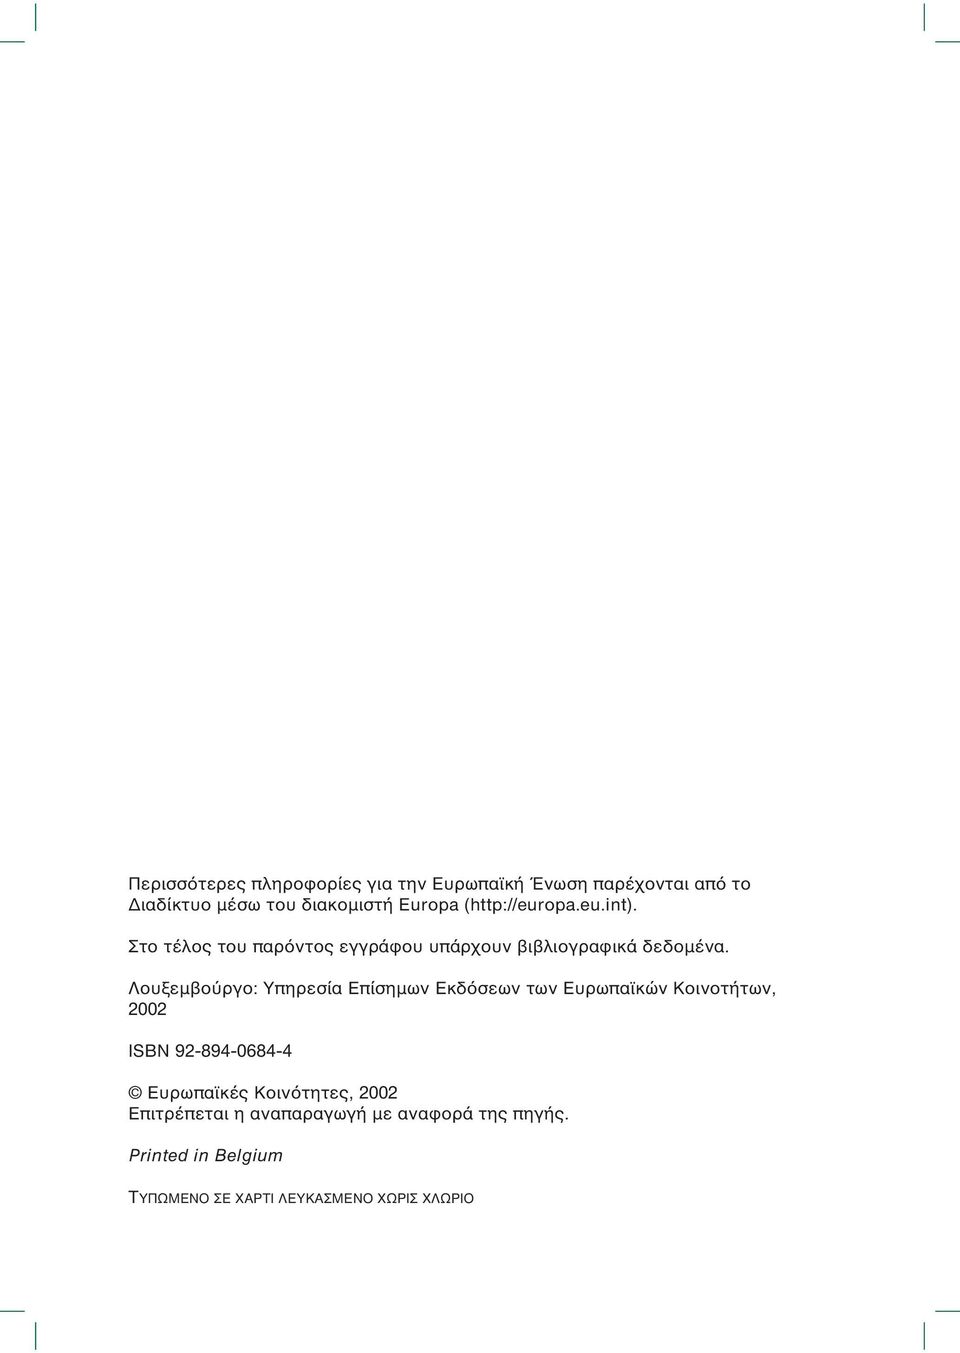 Λουξεµβούργο: Υπηρεσία Επίσηµων Εκδόσεων των Ευρωπαϊκών Κοινοτήτων, 2002 ISBN 92-894-0684-4 Ευρωπαϊκές